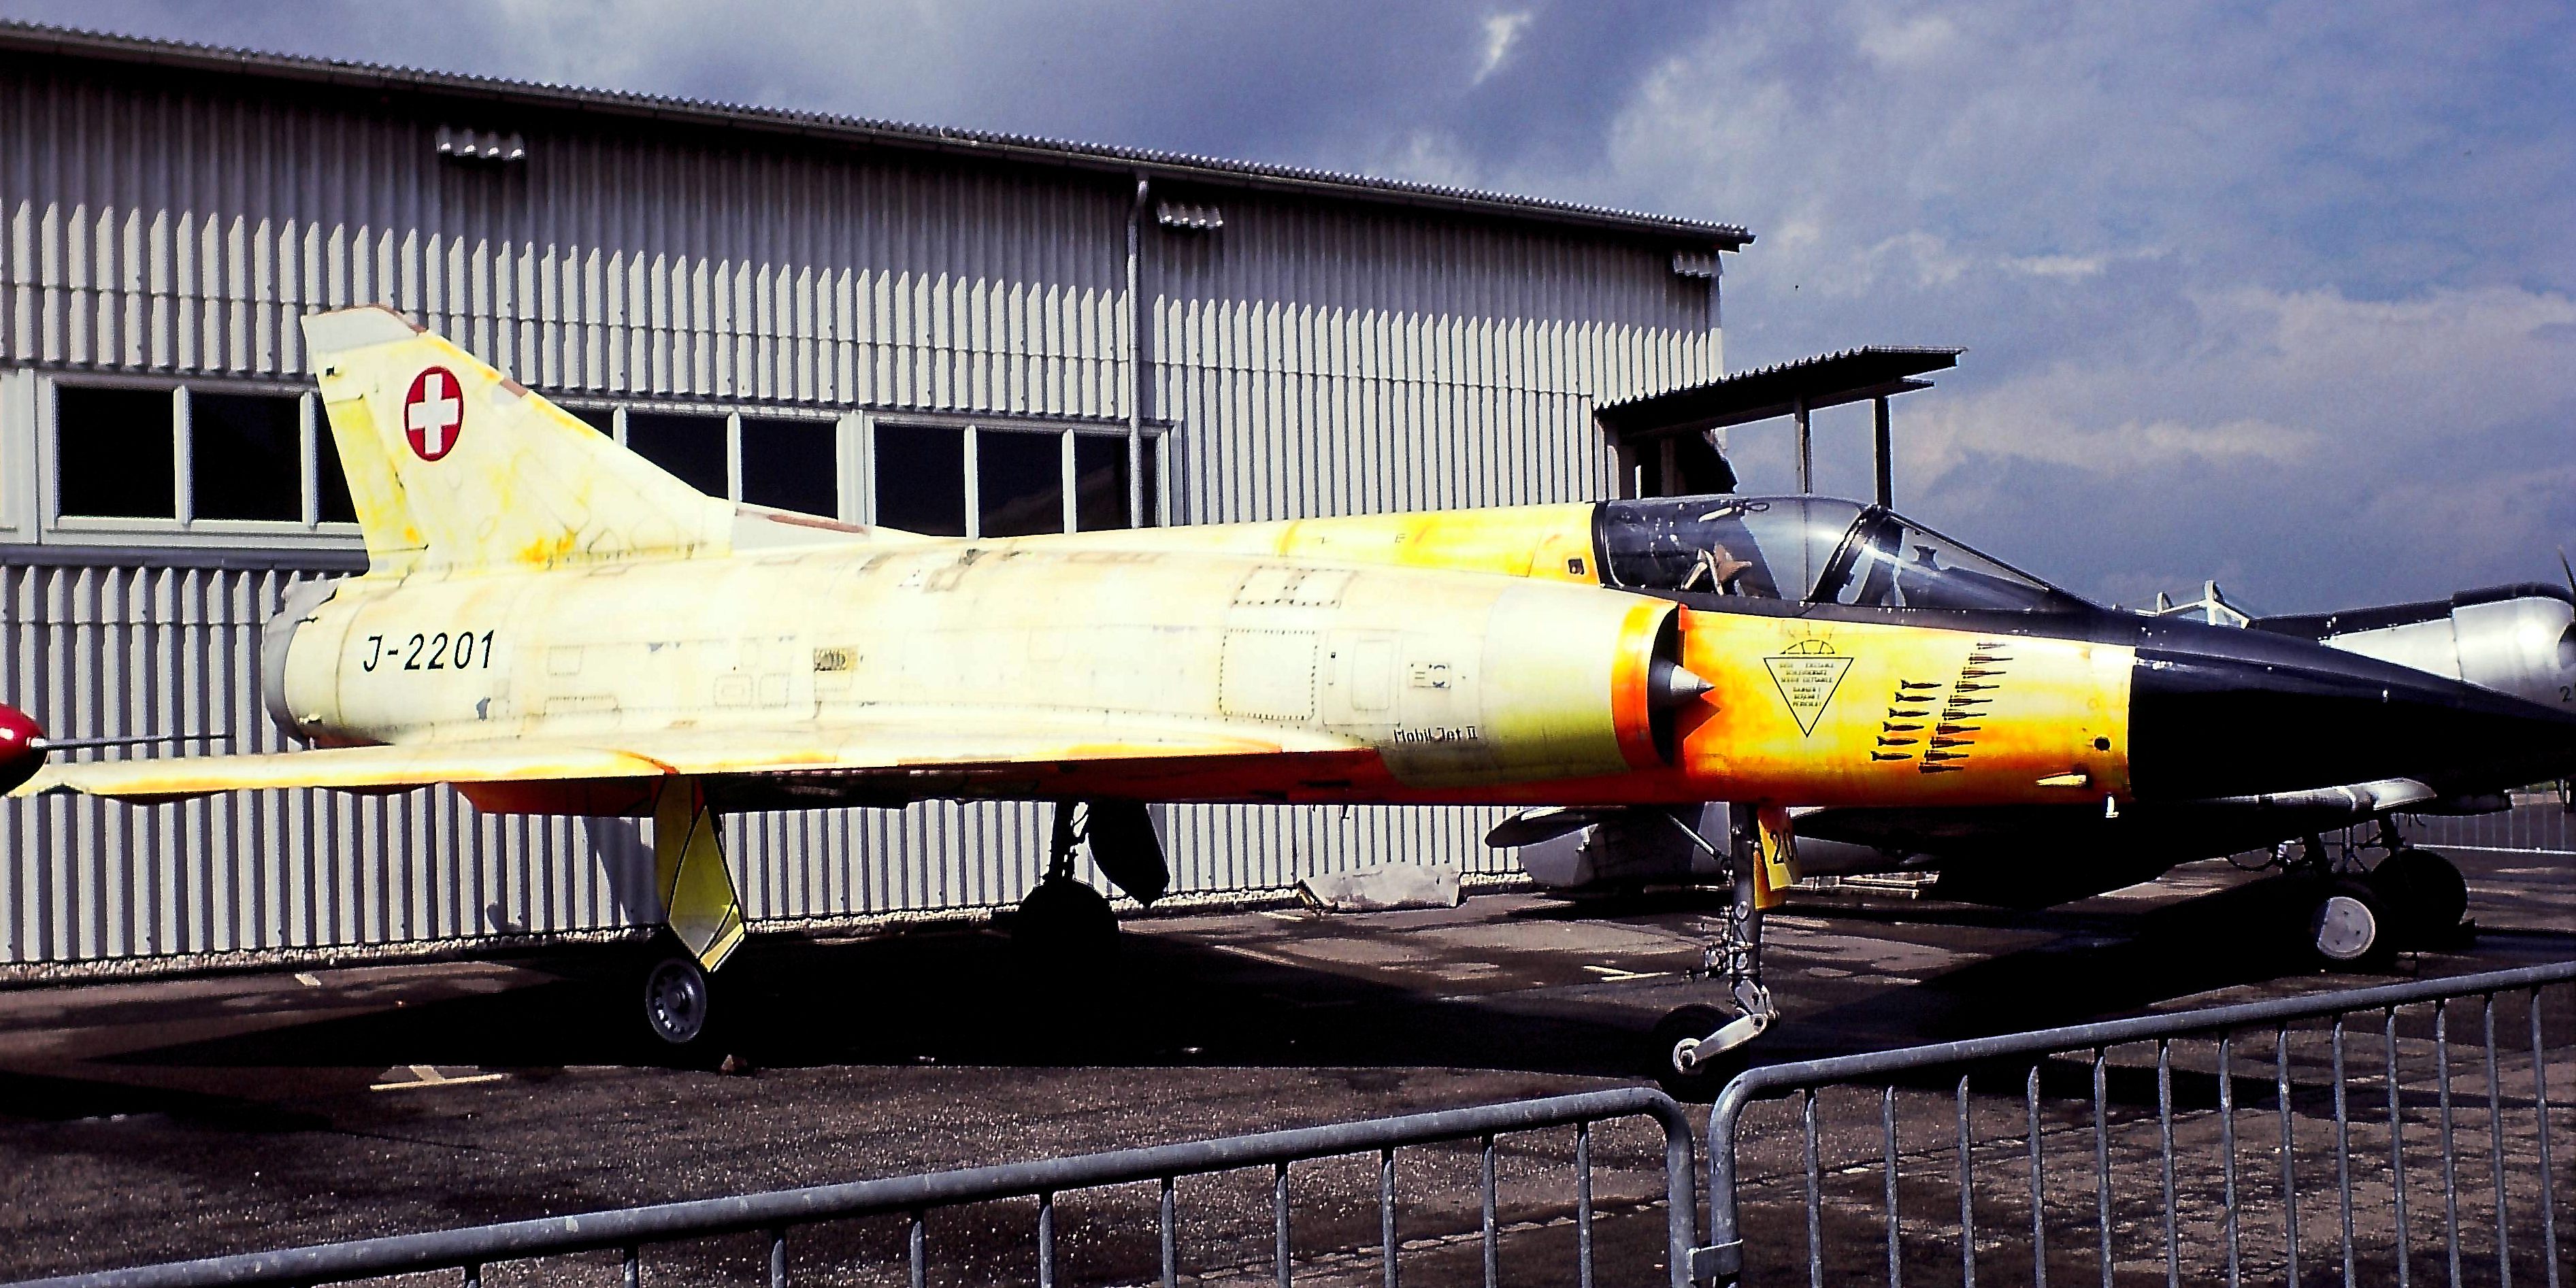 Mirage IIIC J-2201